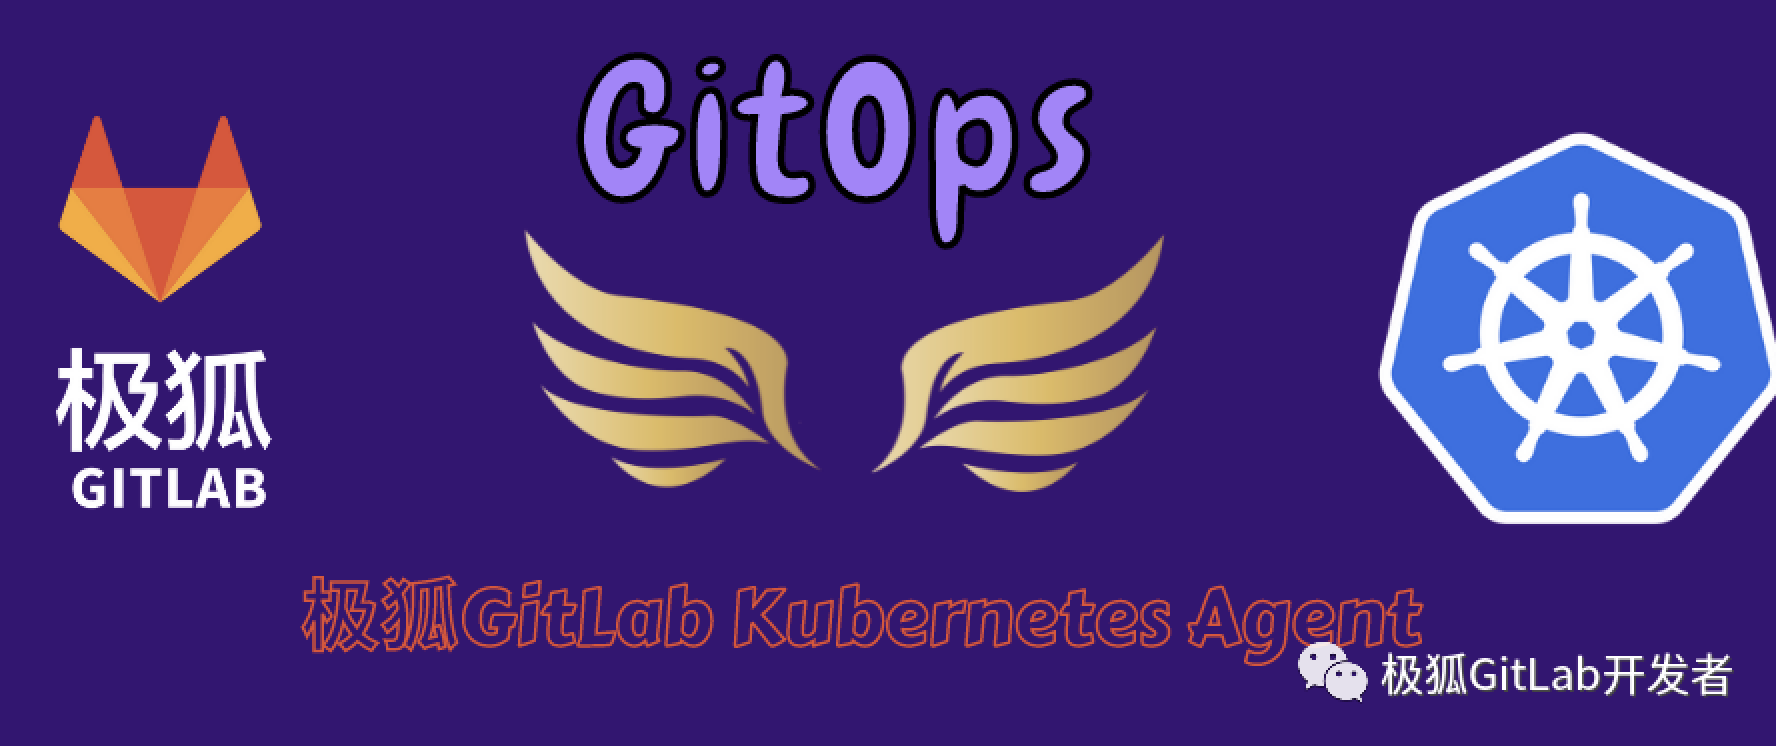 让 KAS 给 GitOps 插上腾飞的翅膀